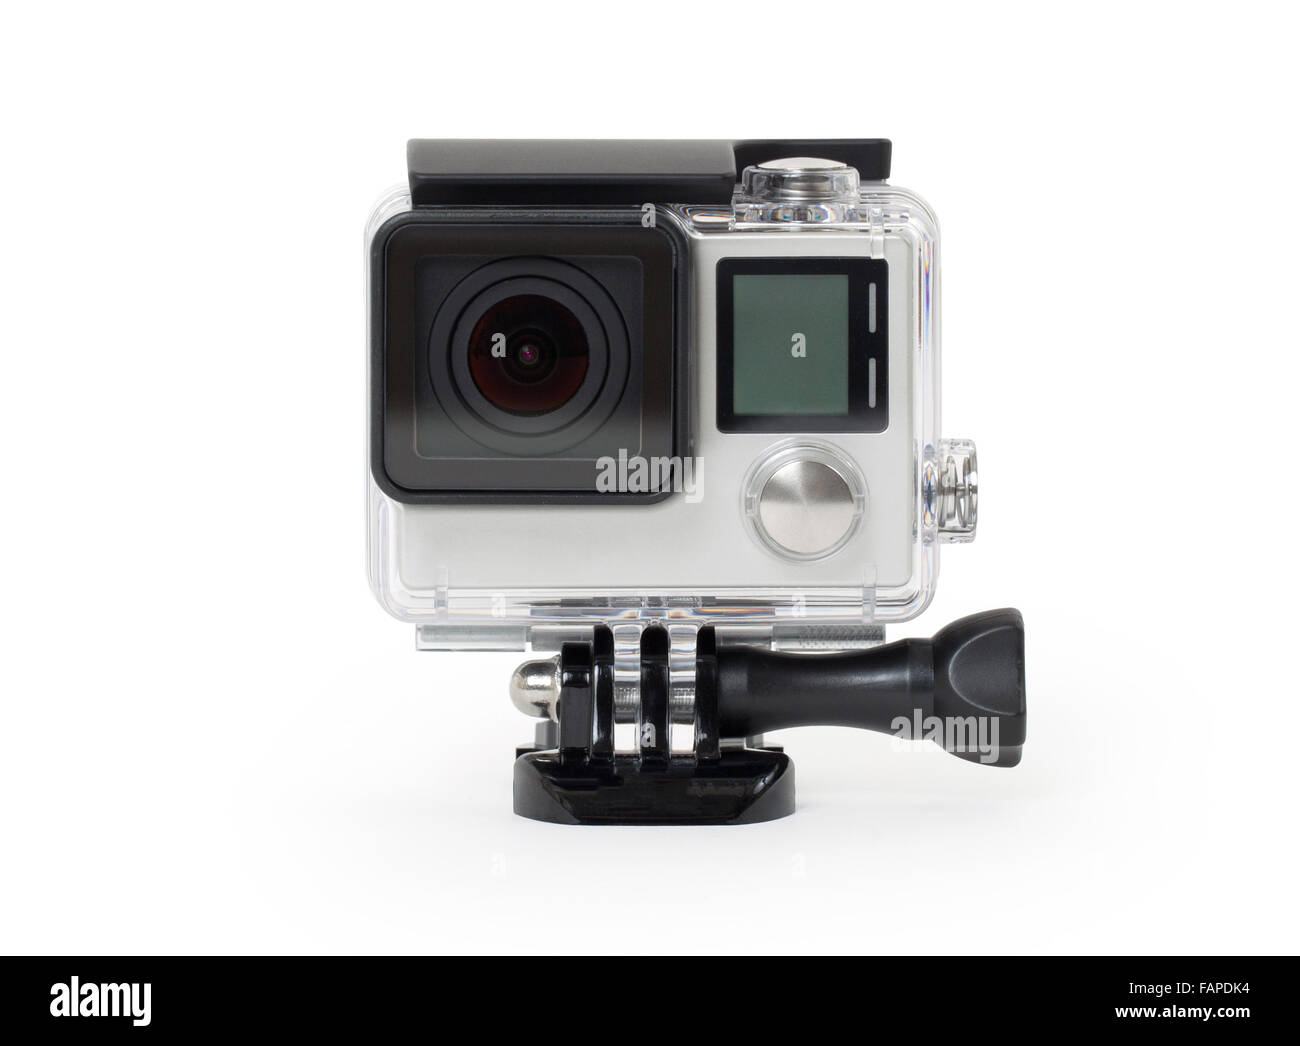 Alta definición cámara personal, aislado en un fondo blanco, sin marca Foto de stock